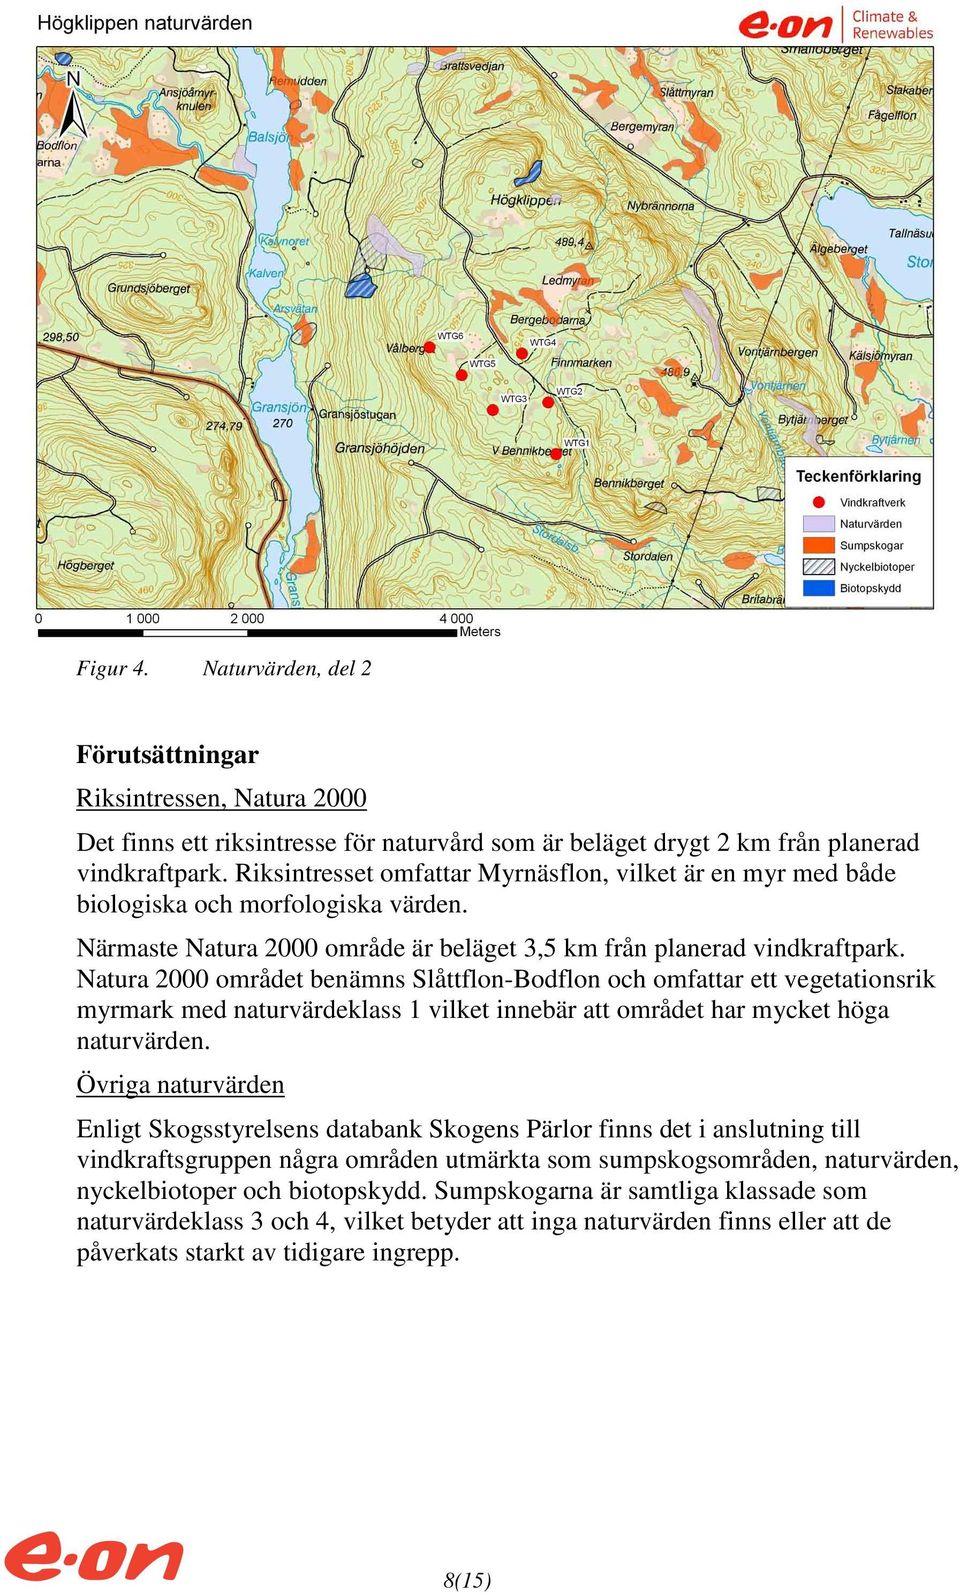 Natura 2000 området benämns Slåttflon-Bodflon och omfattar ett vegetationsrik myrmark med naturvärdeklass 1 vilket innebär att området har mycket höga naturvärden.